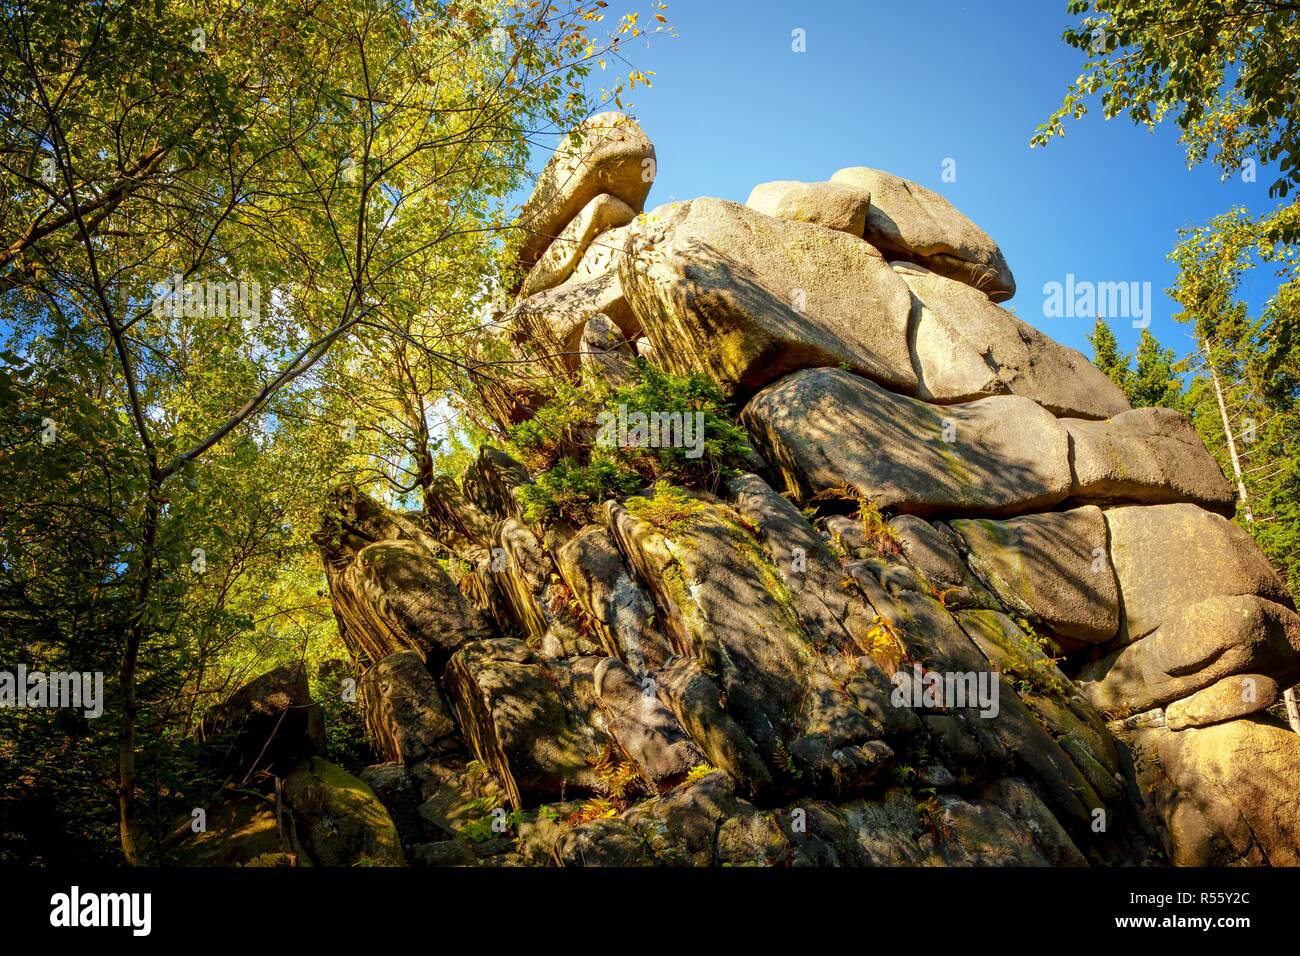 Rock formation avec des structures bizarres dans la forêt de la montagne. Vu dans les montagnes du Harz en Allemagne. Banque D'Images